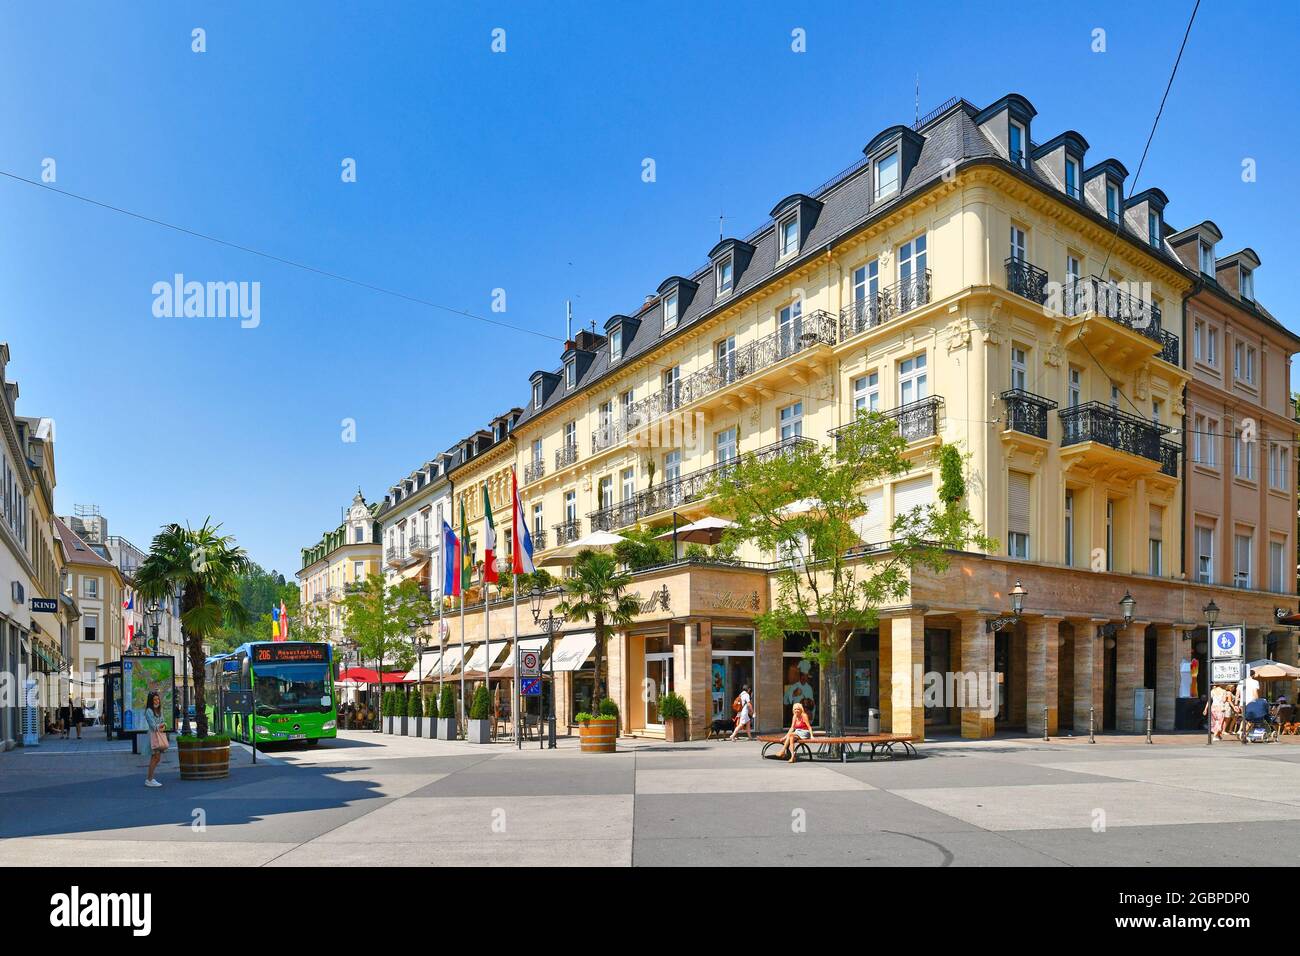 Baden-Baden, Allemagne - juillet 2021 : place de la ville appelée « Leopoldsplatz » dans le centre historique de la ville thermale de Baden-Baden par une belle journée d'été Banque D'Images